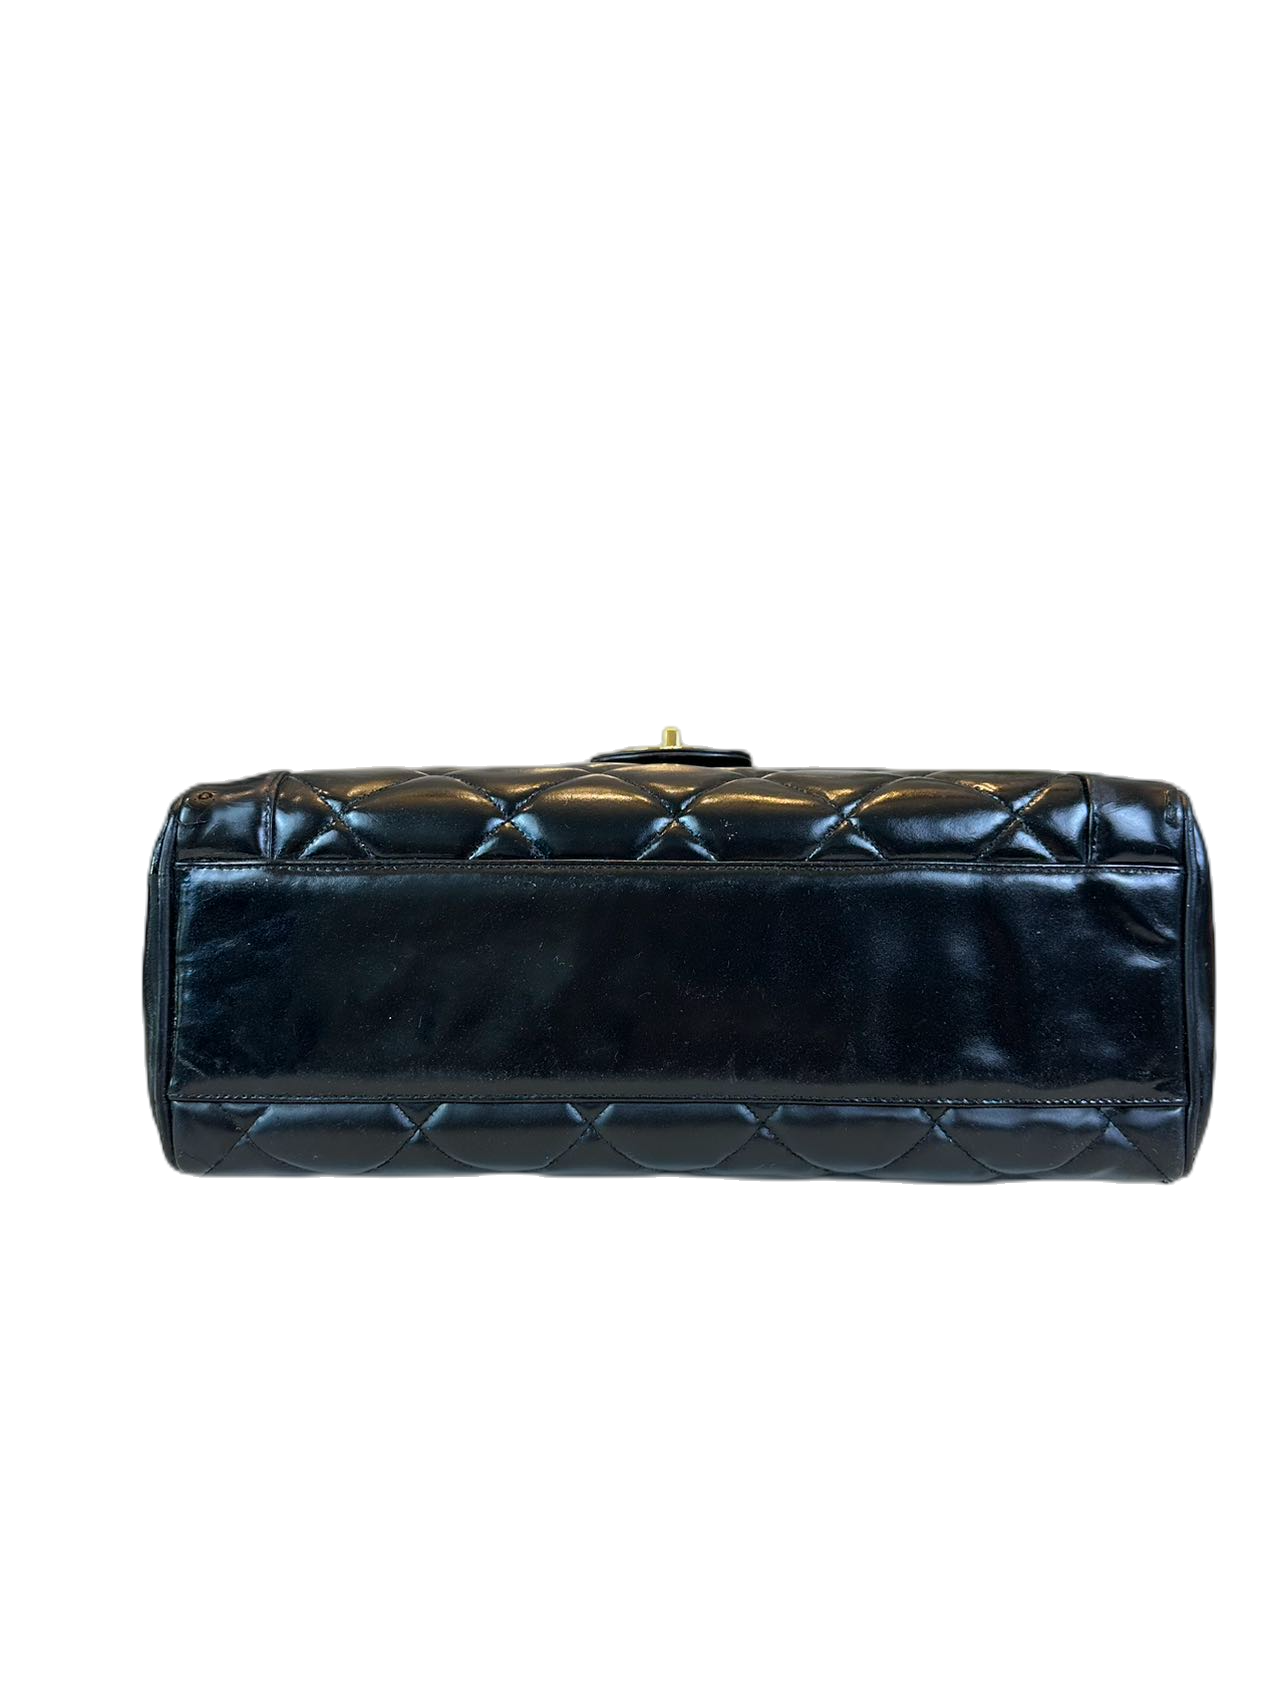 Preloved Chanel Black Leather Vintage Handbag Satchel